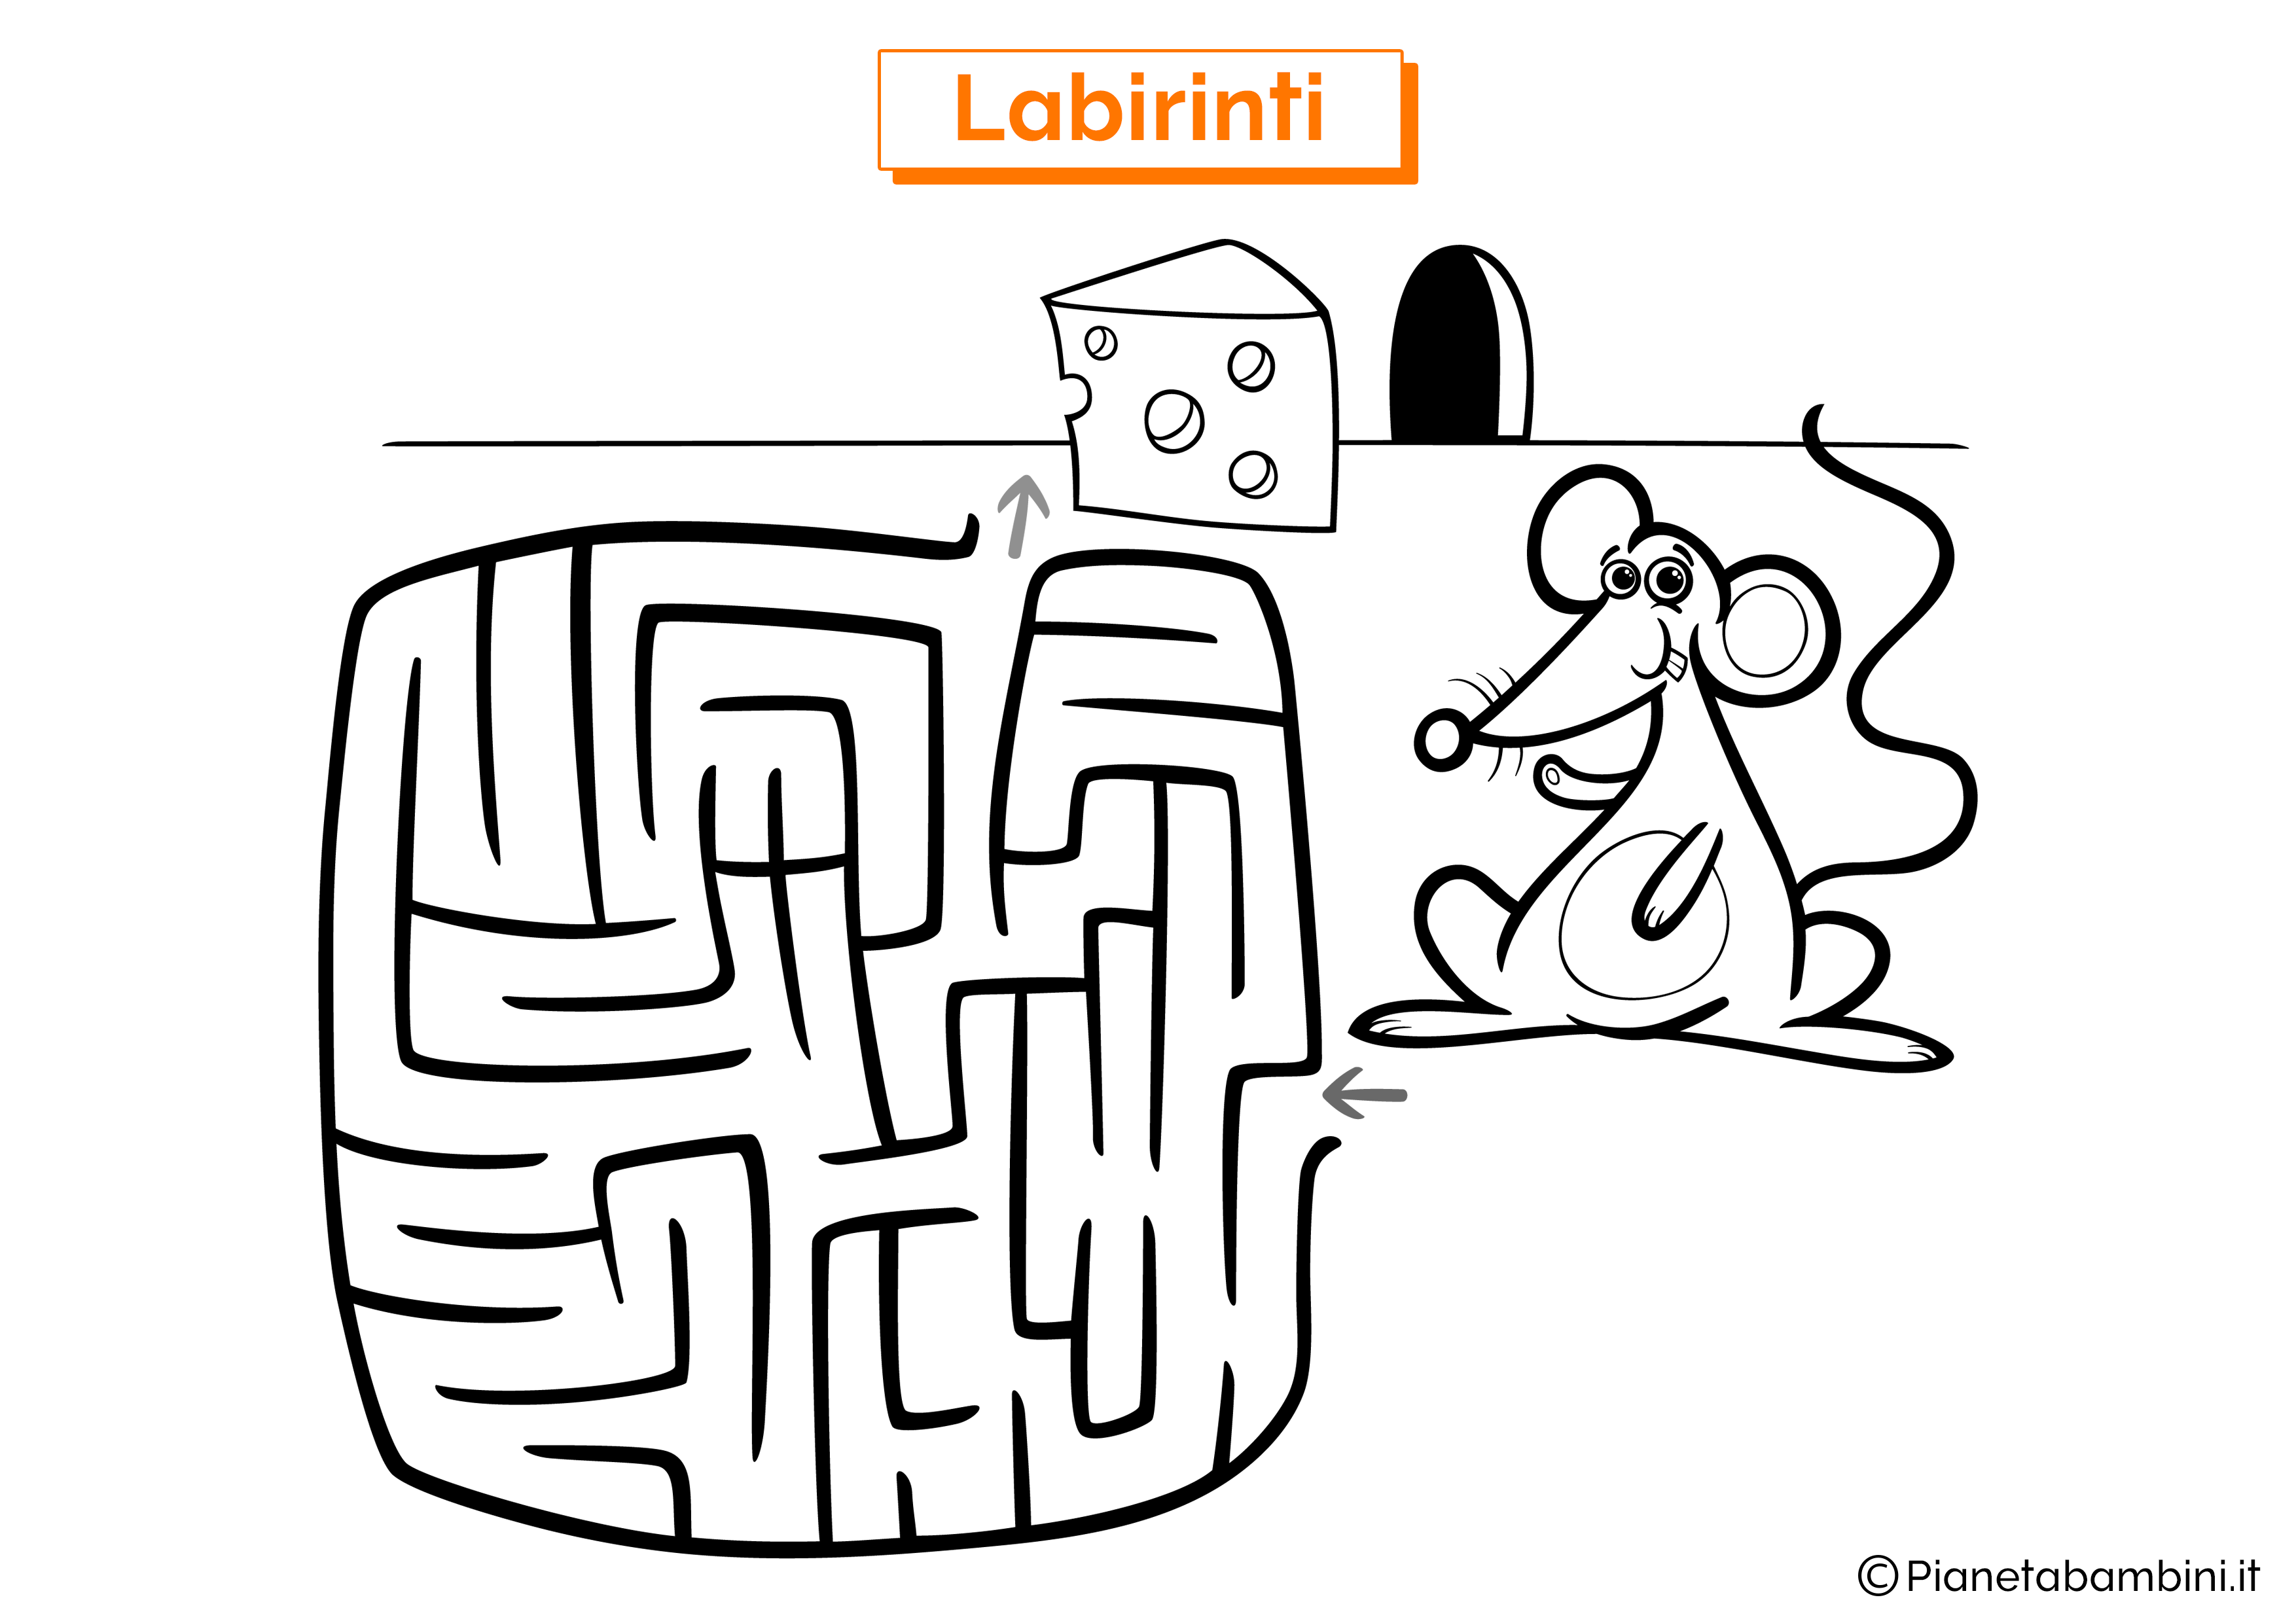 Labirinto con topo e formaggio da stampare